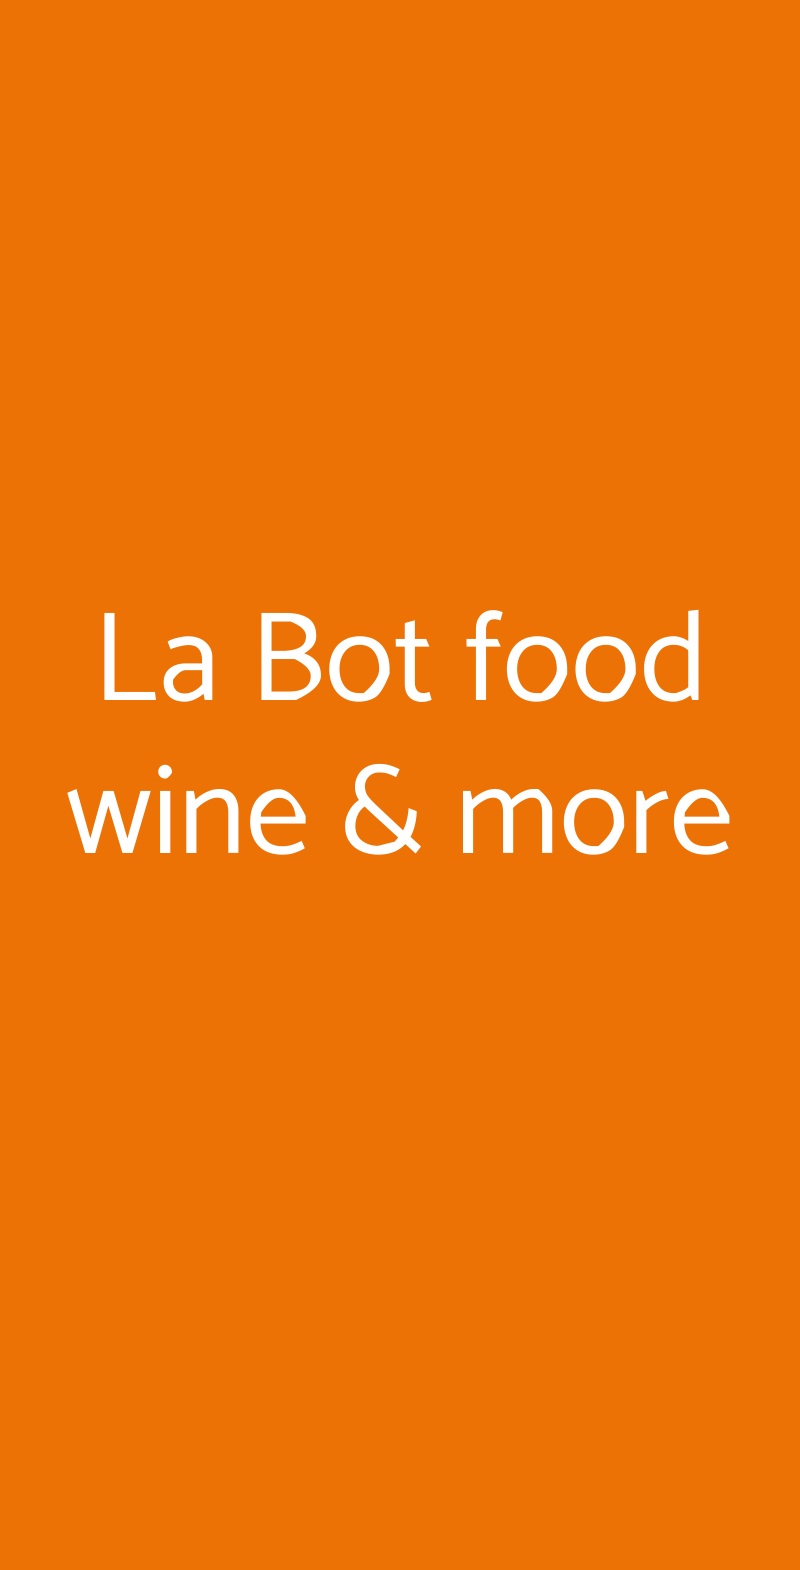 La Bot food wine & more Salorno menù 1 pagina